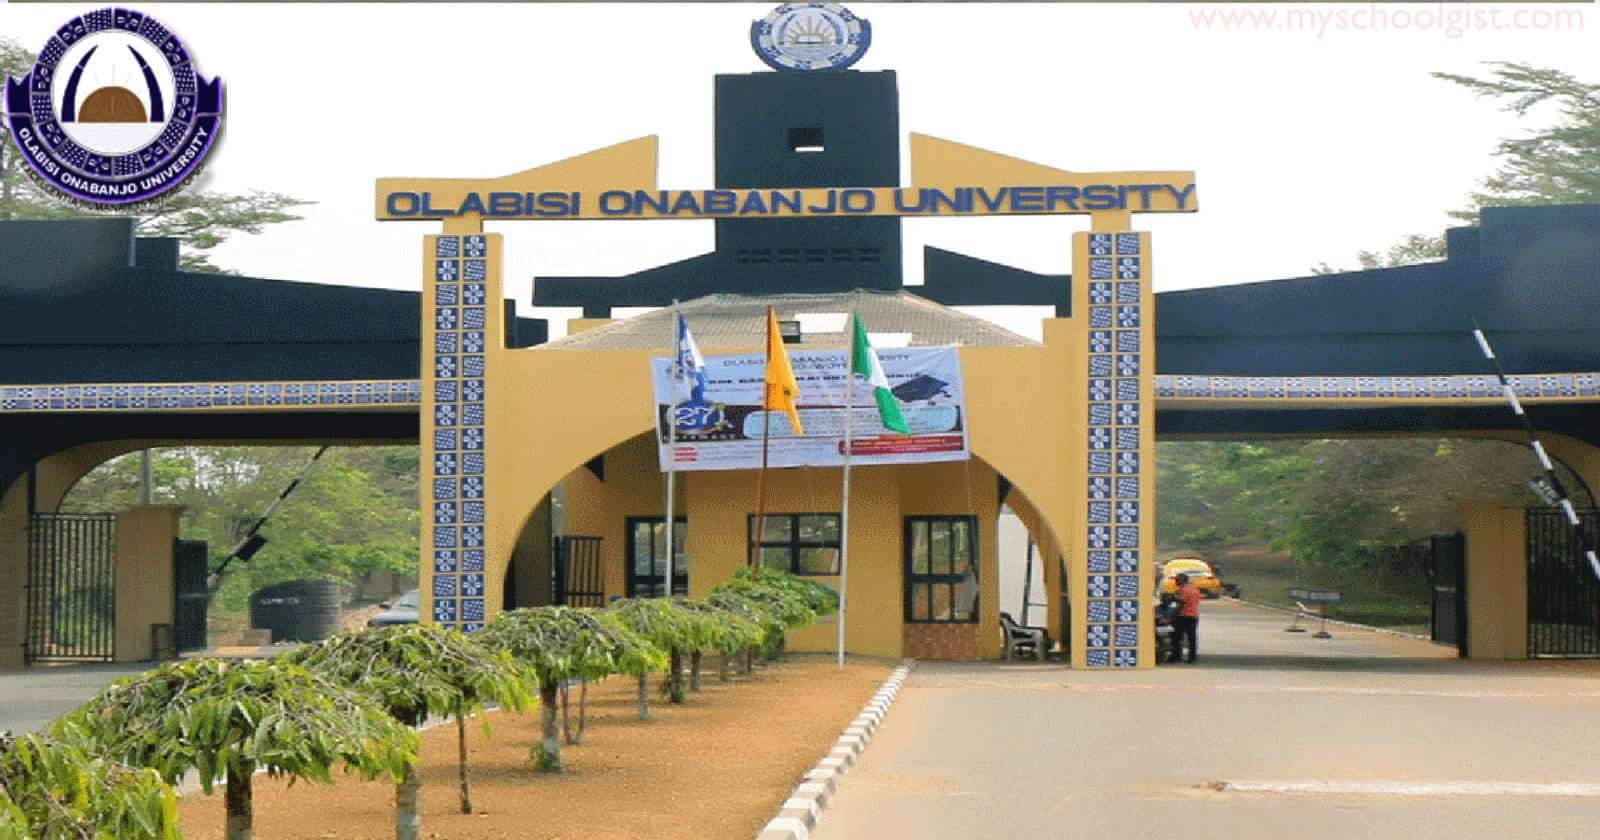 Olabisi Onabanjo University (OOU) Academic Records